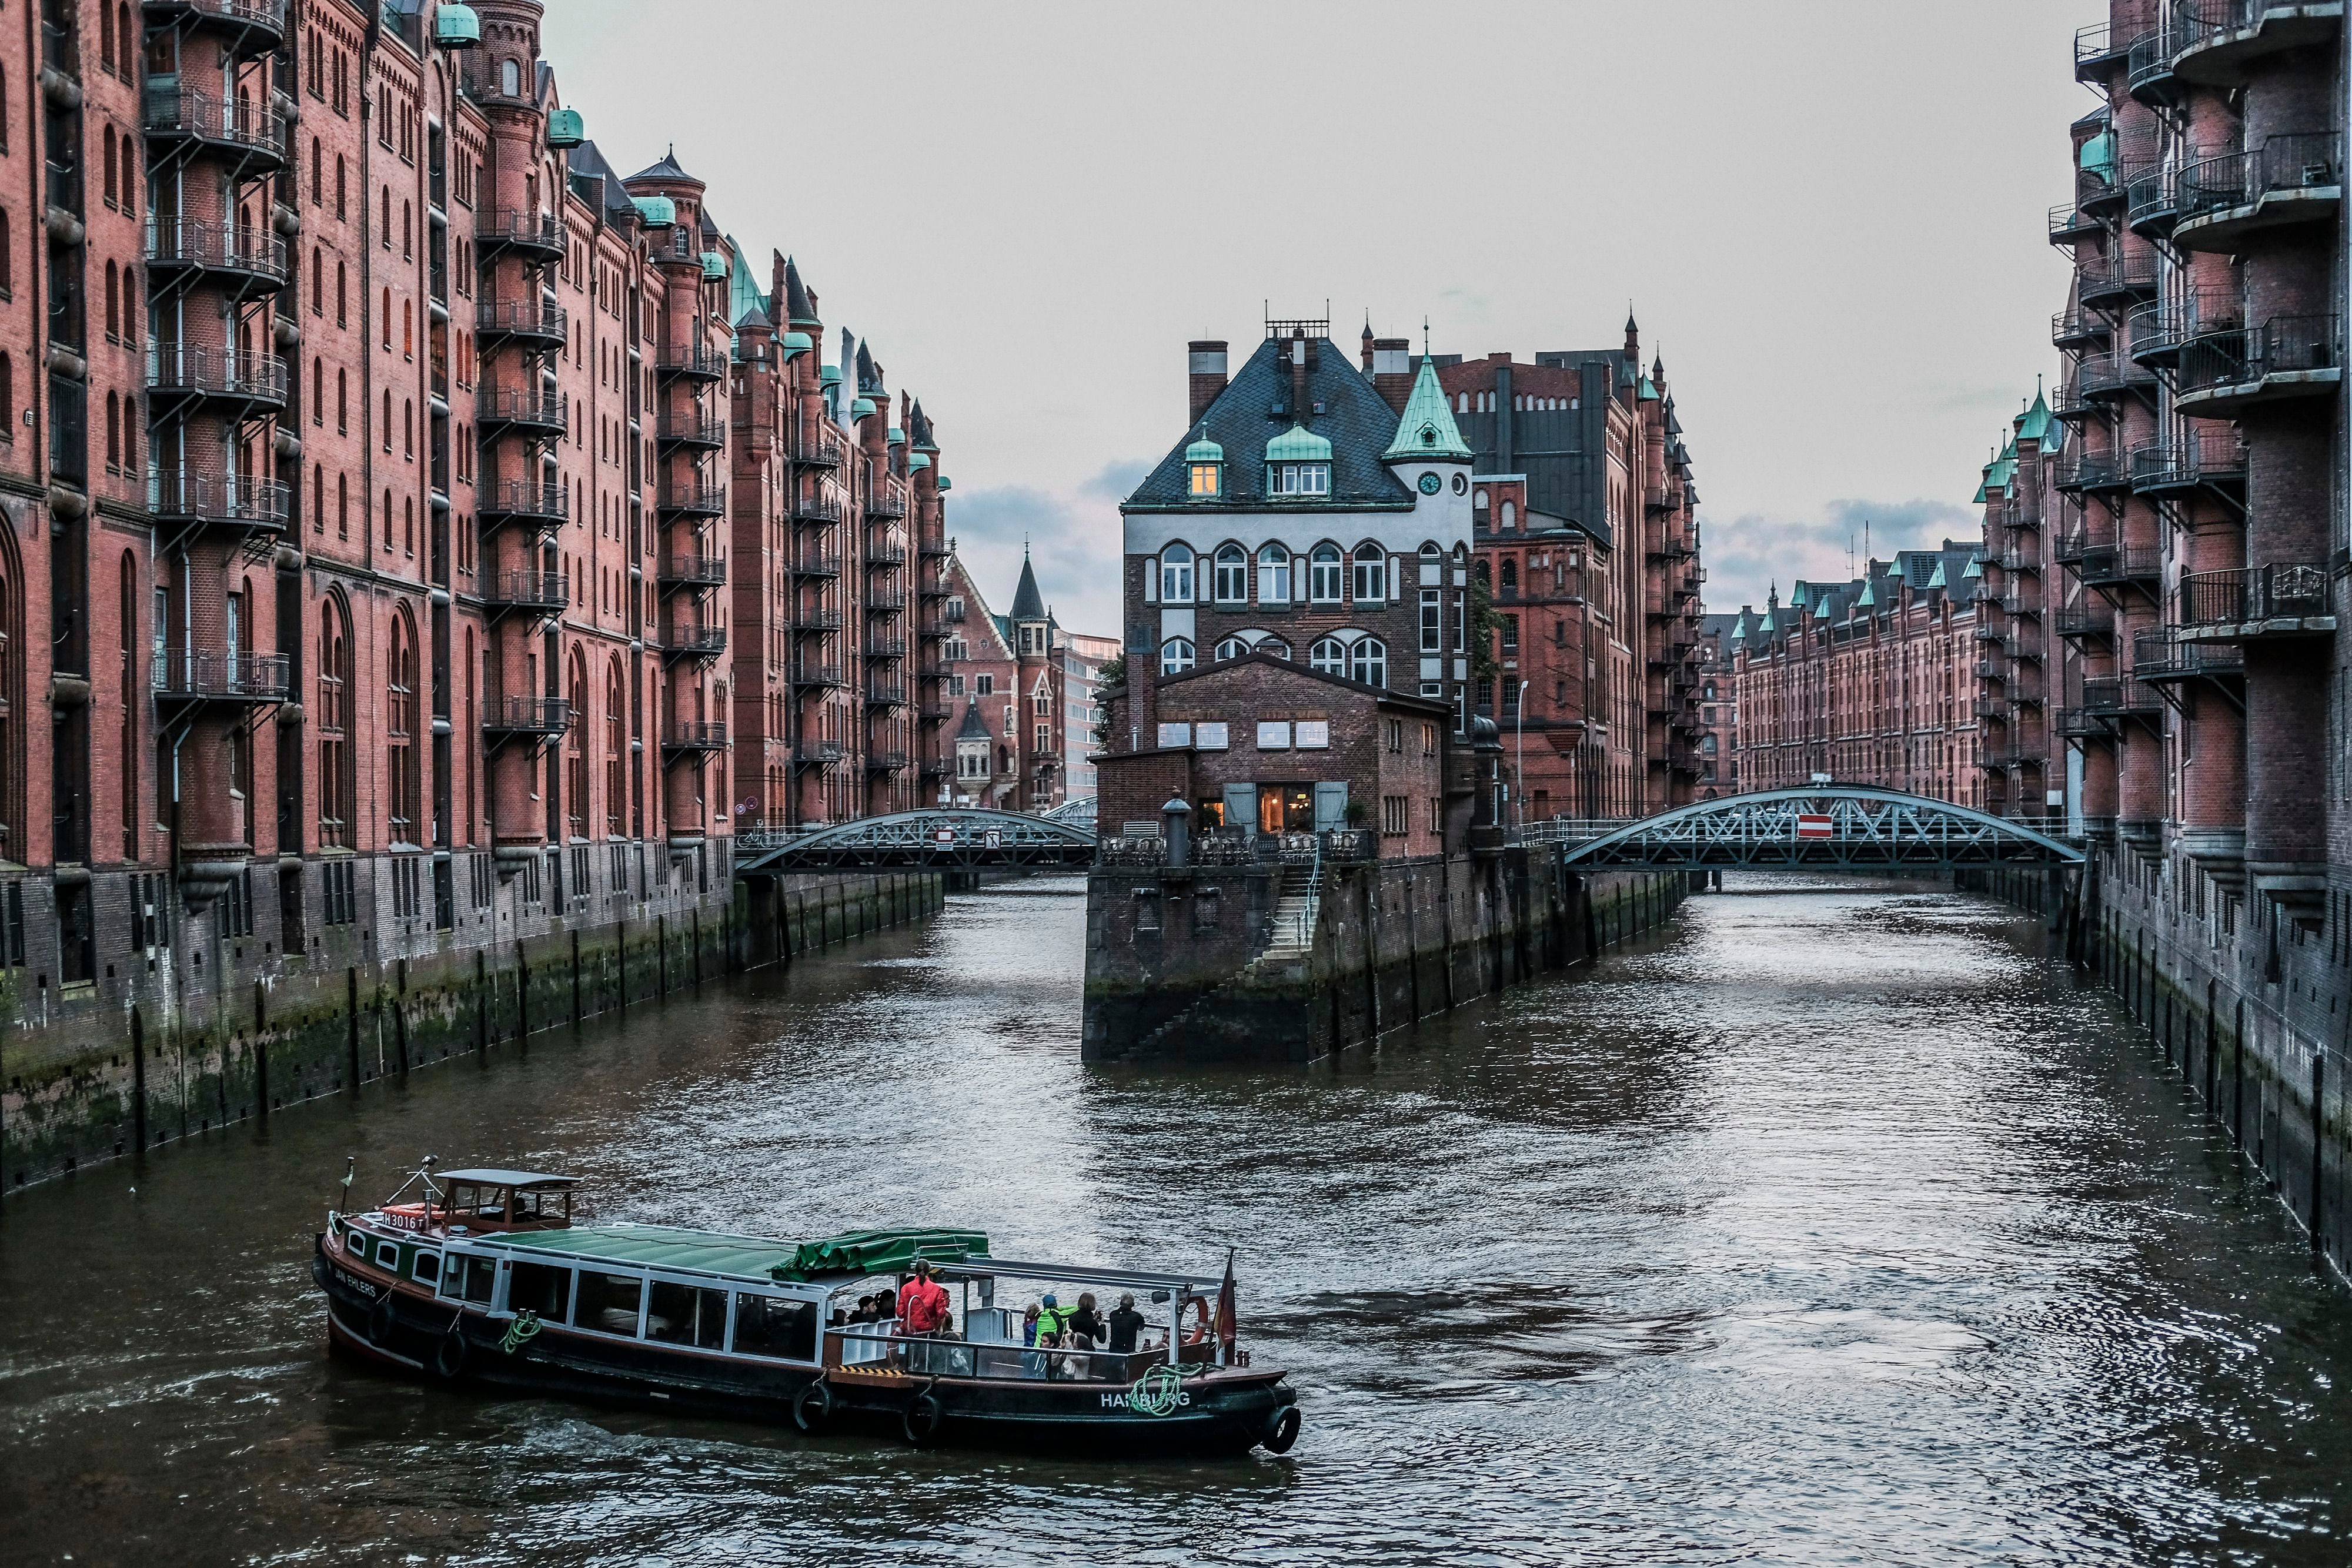 Ocho razones para visitar Hamburgo, desde pasear a orillas de un lago hasta tomarse una cerveza en un mercado del siglo XVIII